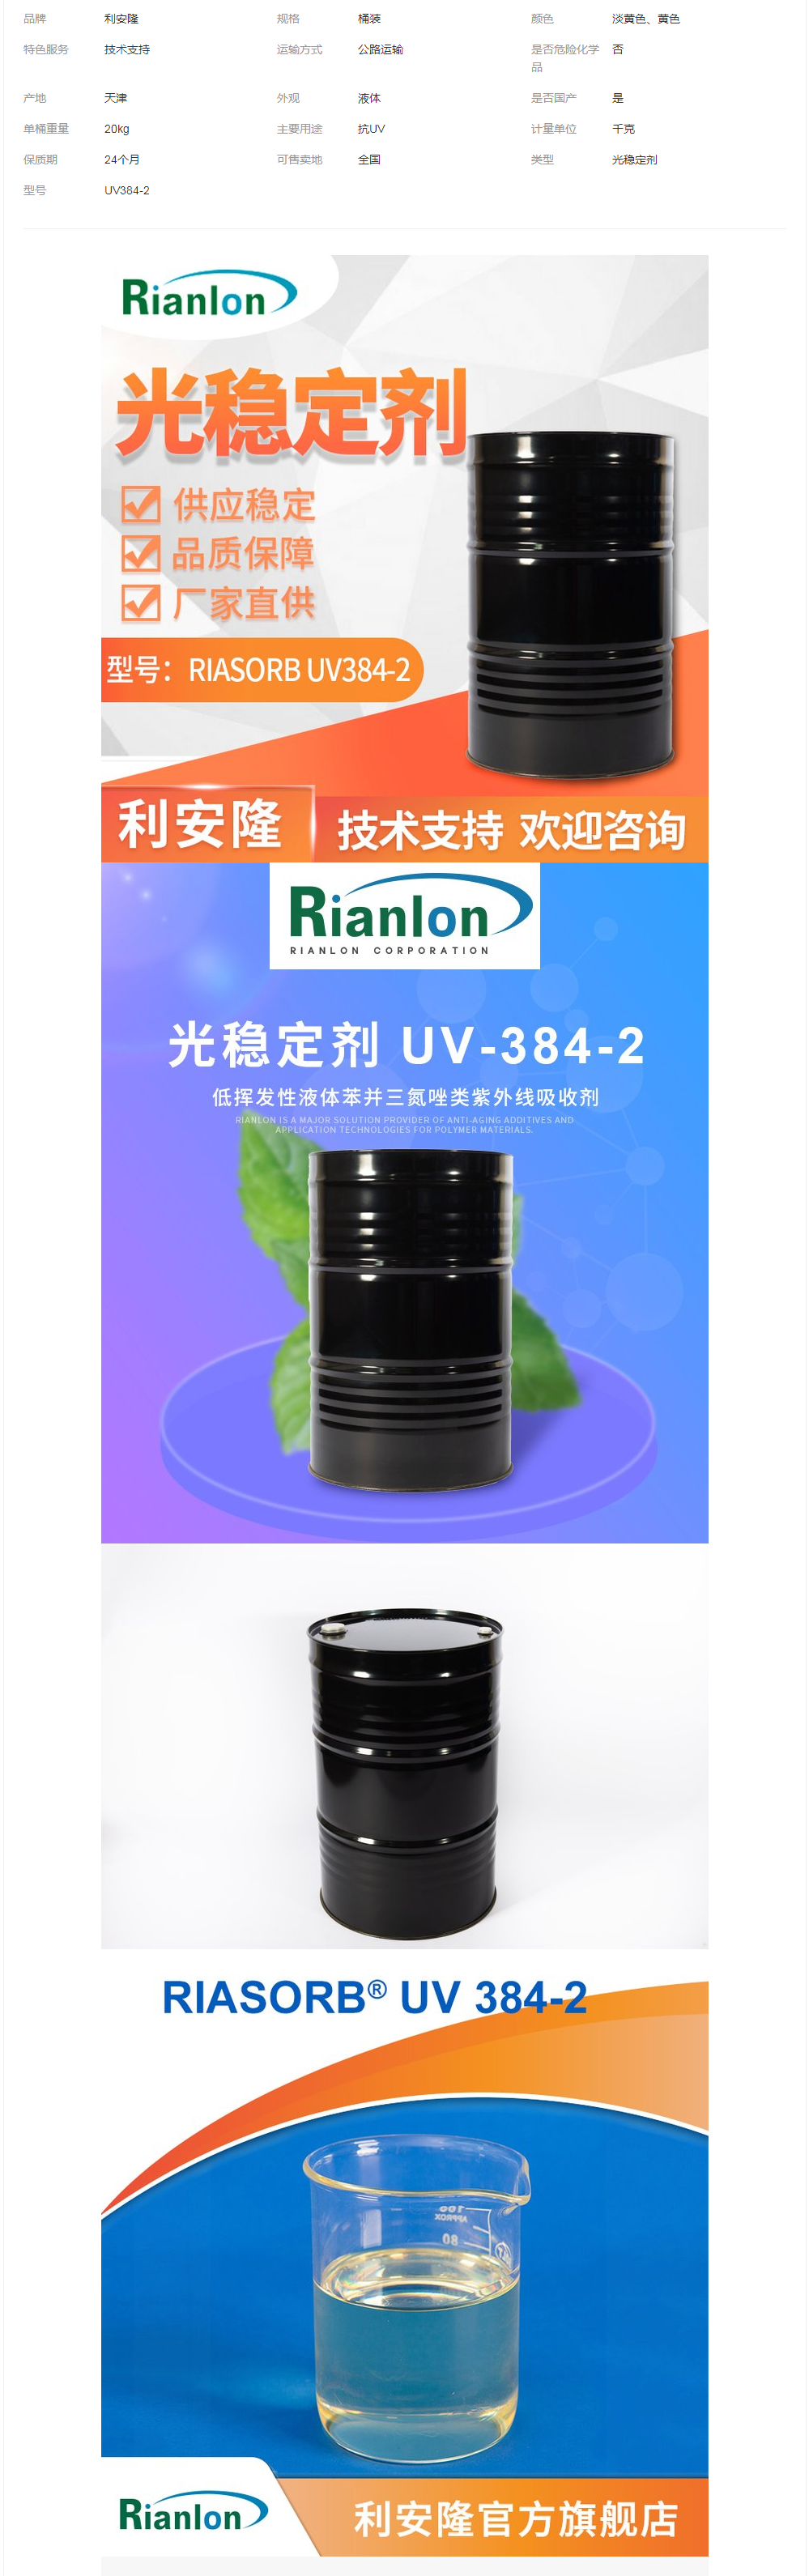 利安隆光稳定剂 UV384-2涂料用苯并三氮唑类防老化紫外线吸收剂.png